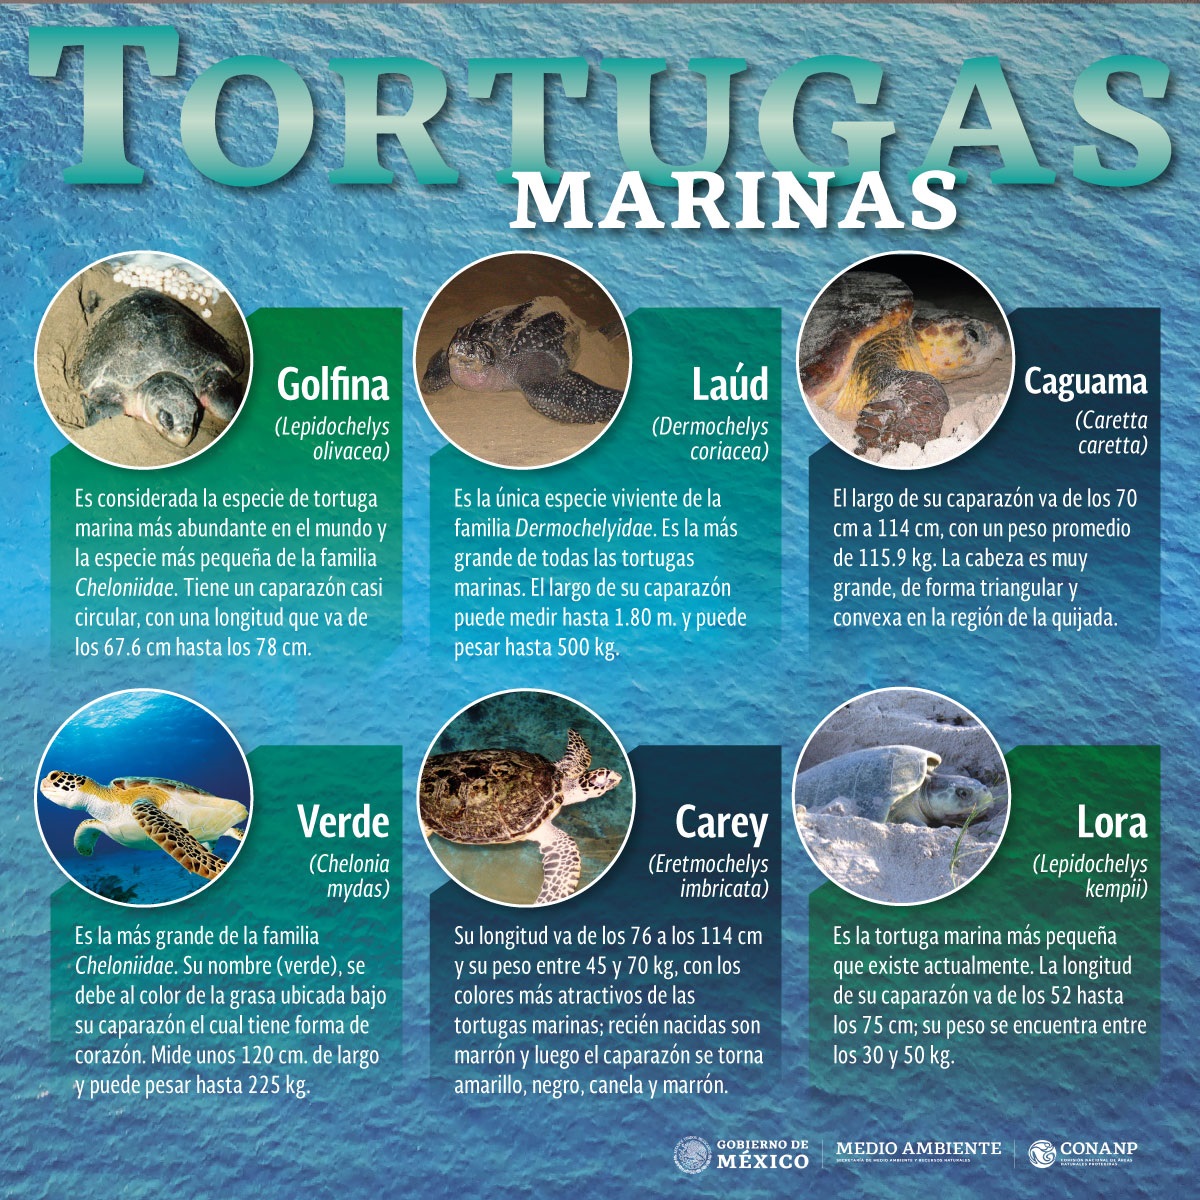 /cms/uploads/image/file/499369/Infograf_a-Tortugas-Marinas-2019.jpg